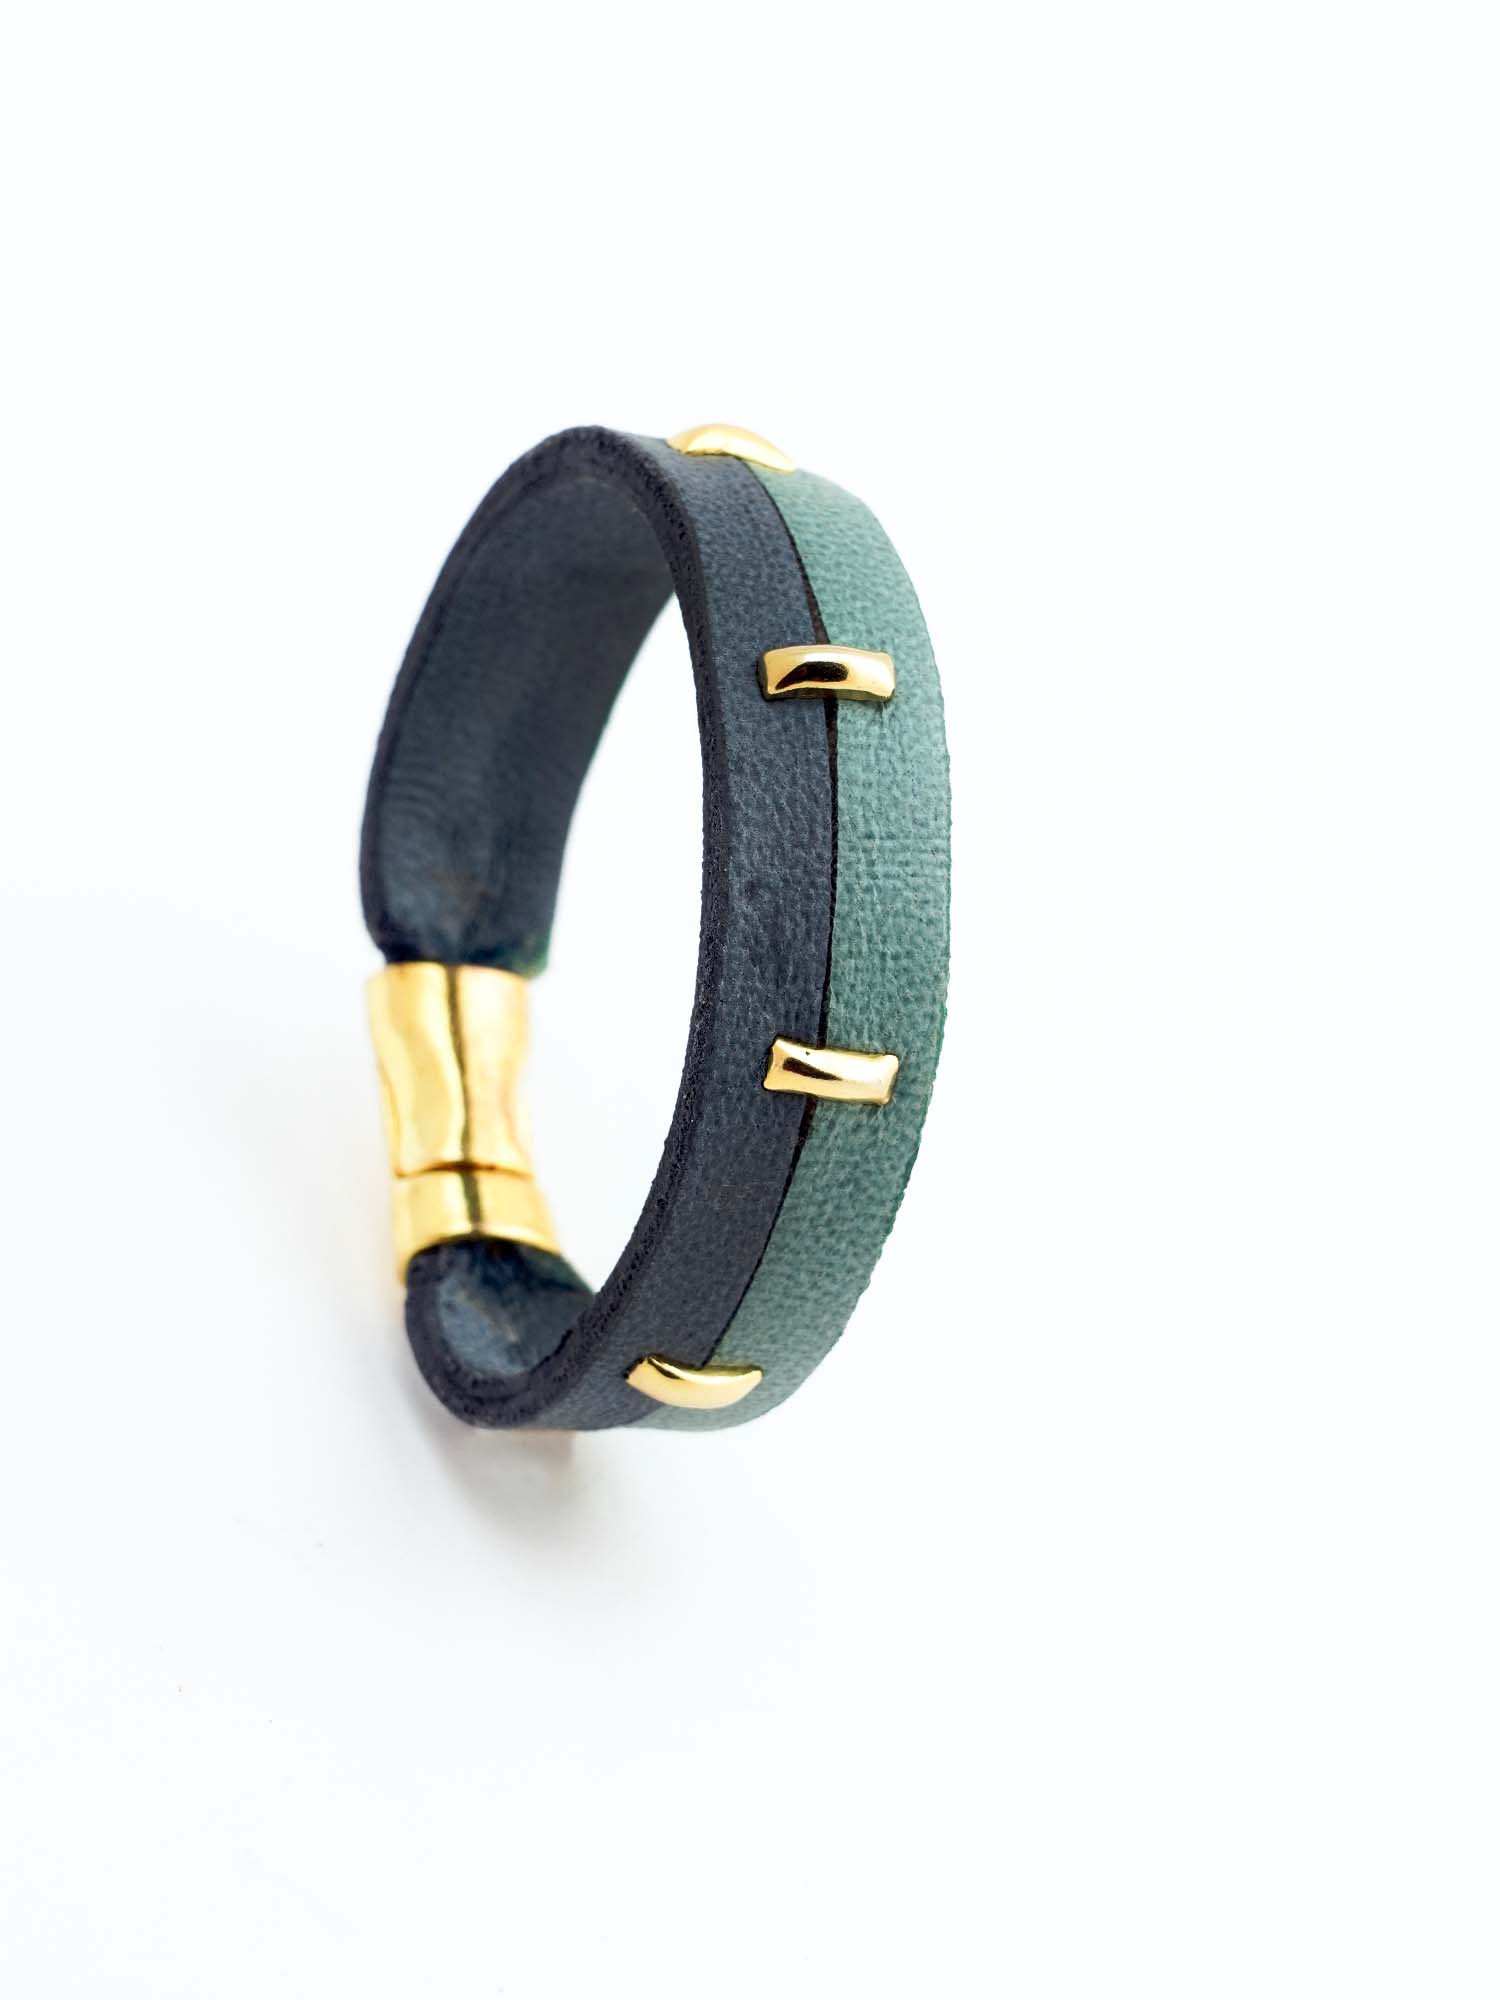 Shop leather bracelet for men